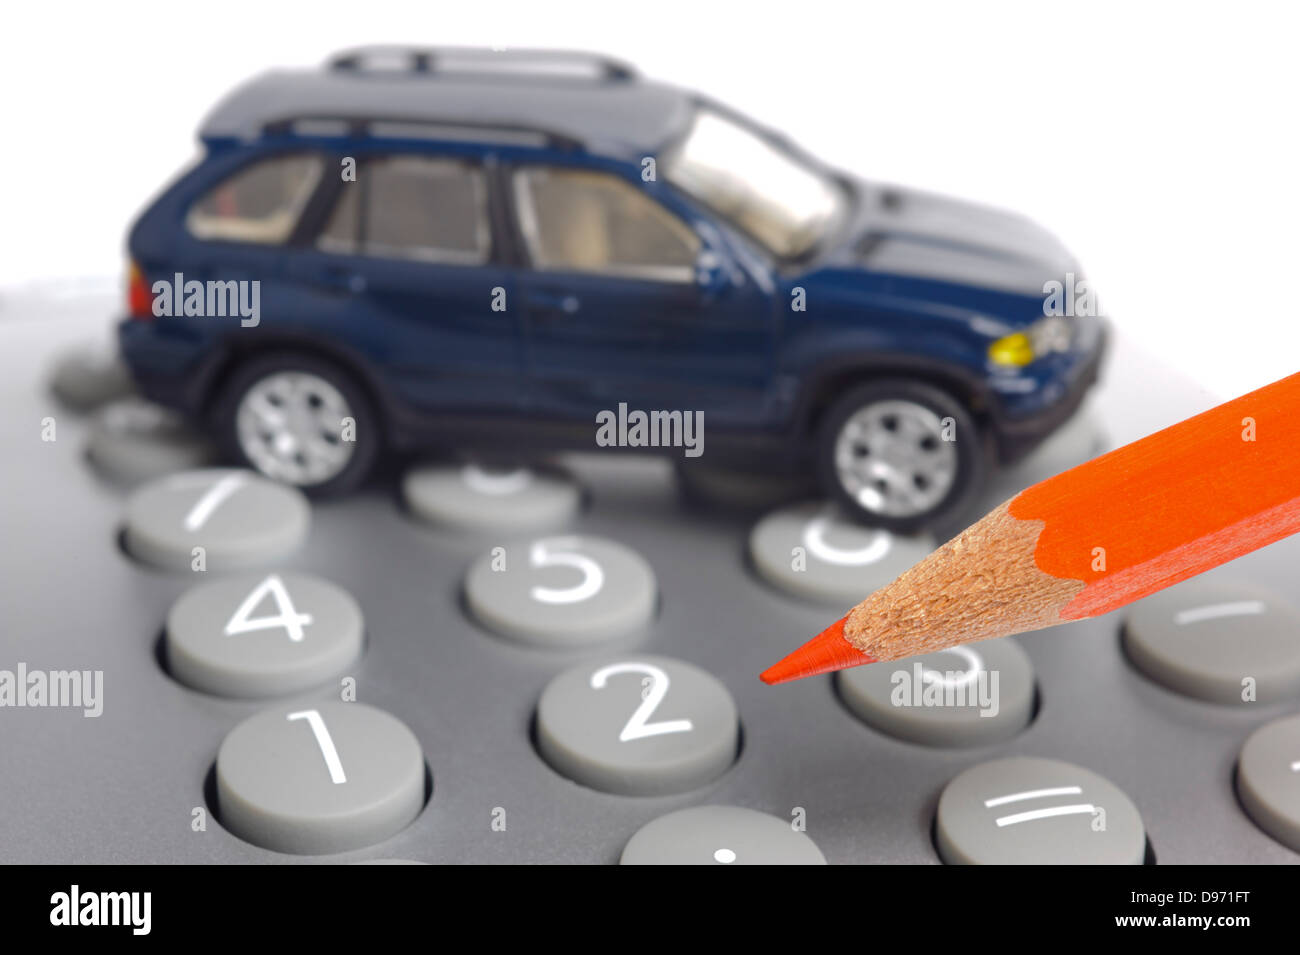 Sur le modèle de voiture calculette financière avec crayon rouge Banque D'Images